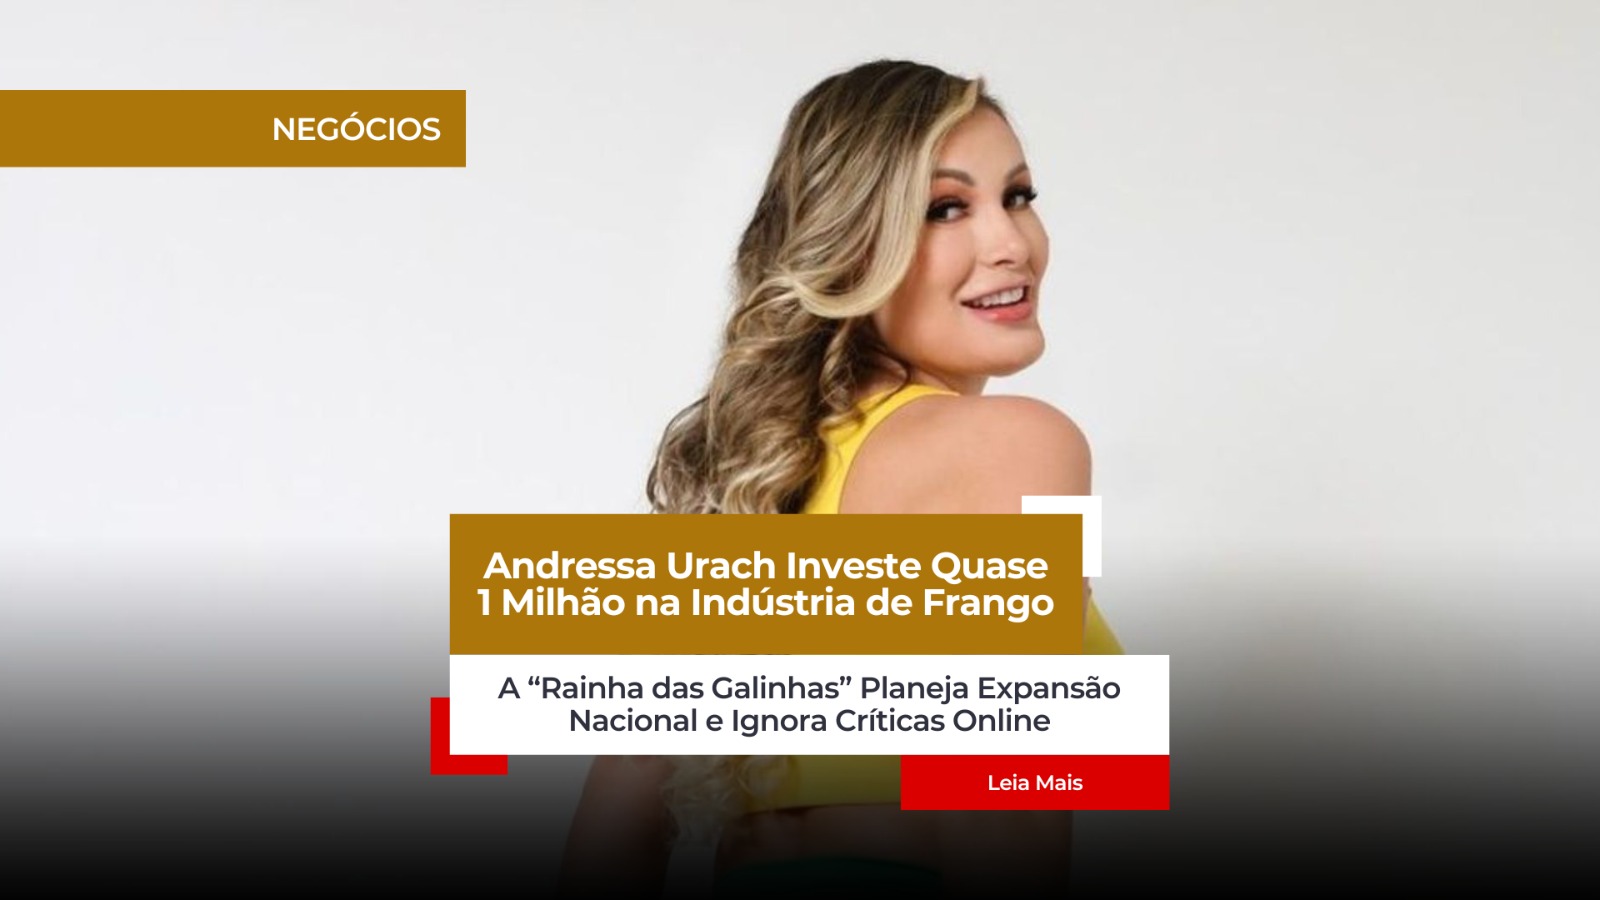 Andressa Urach Investe Quase 1 Milhão na Indústria de Frango